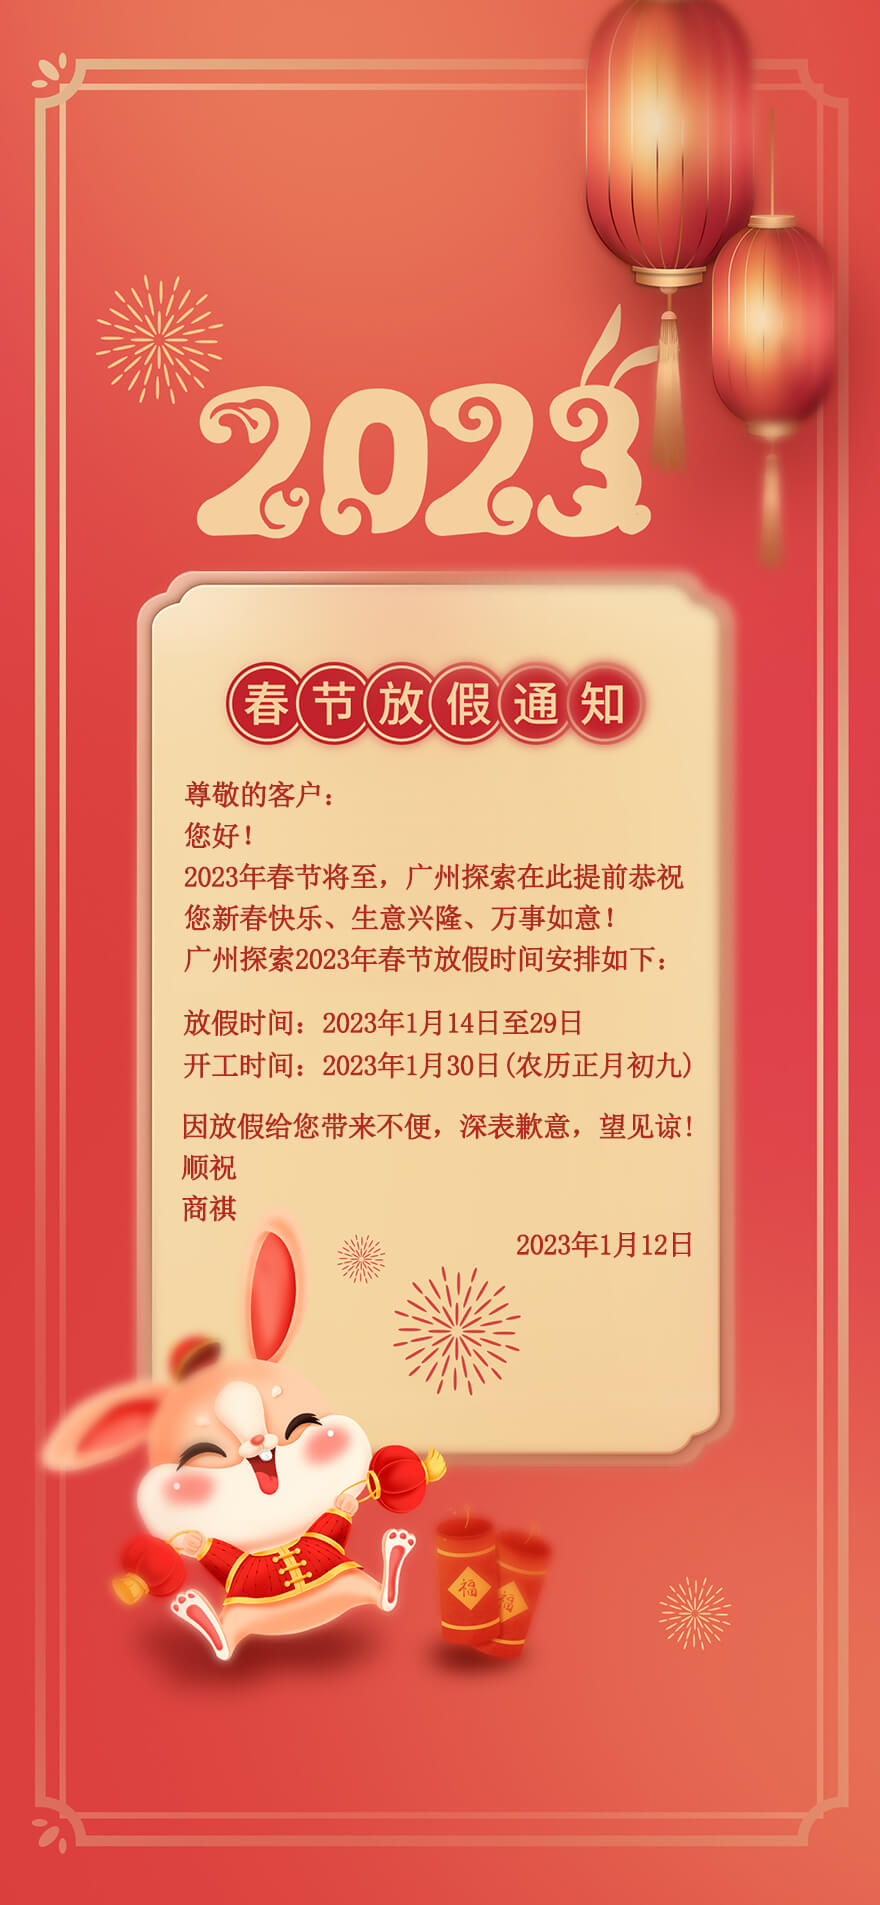 广州探索2023年春节放假通知及新年祝福